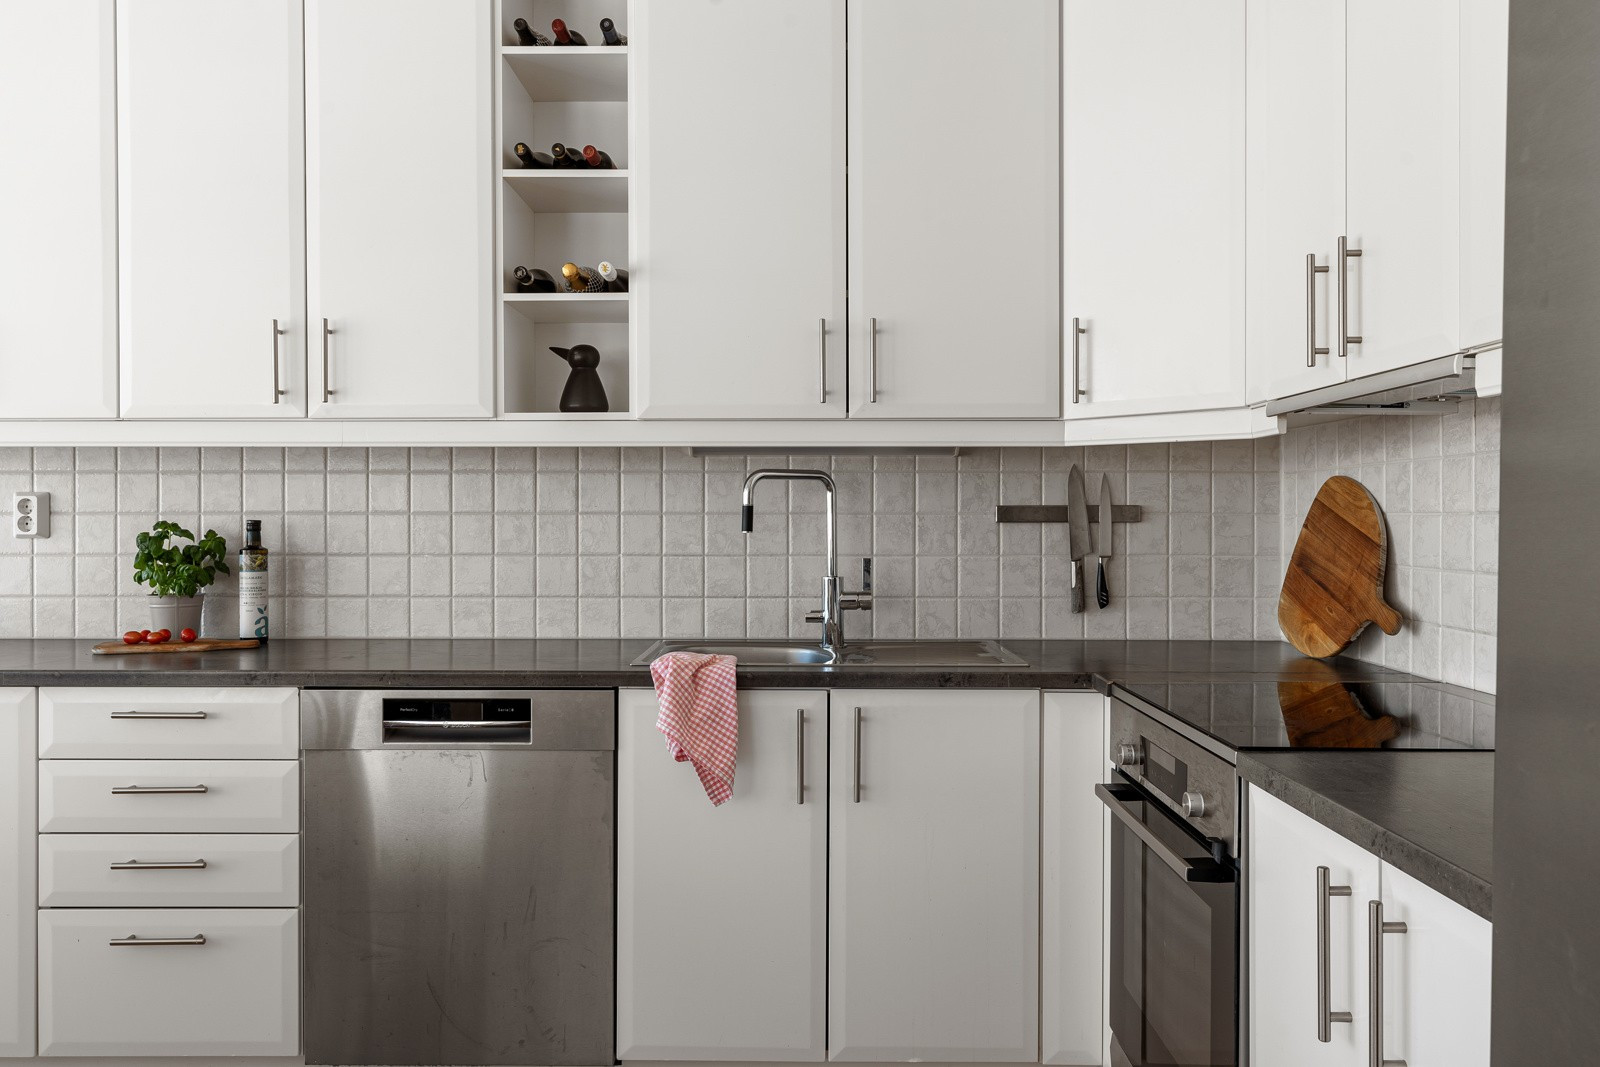 Kjøkkenet har plass til alt man trenger av hvitevarer som stekeovn, platetopp, oppvaskmaskin og kjøl/frys.